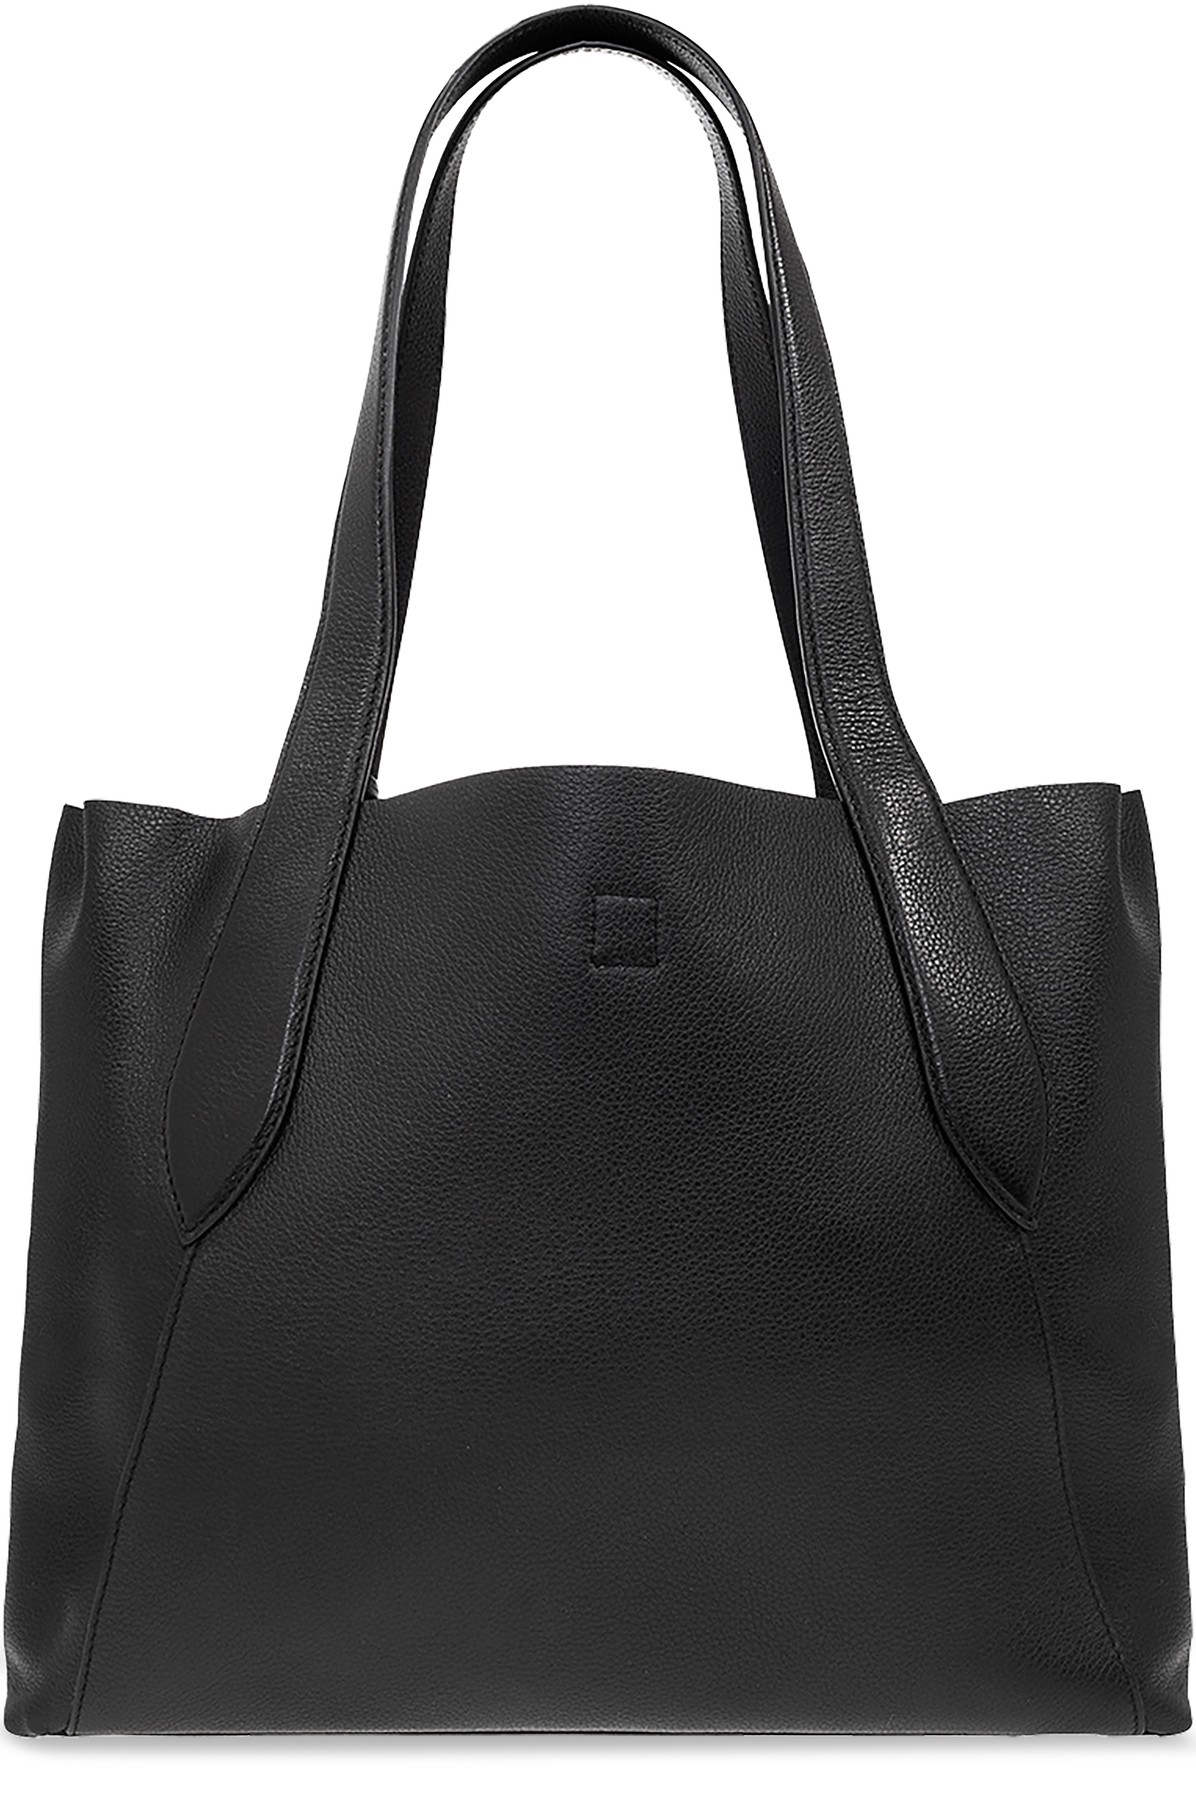 Sophia Webster ‘Hola' shopper bag